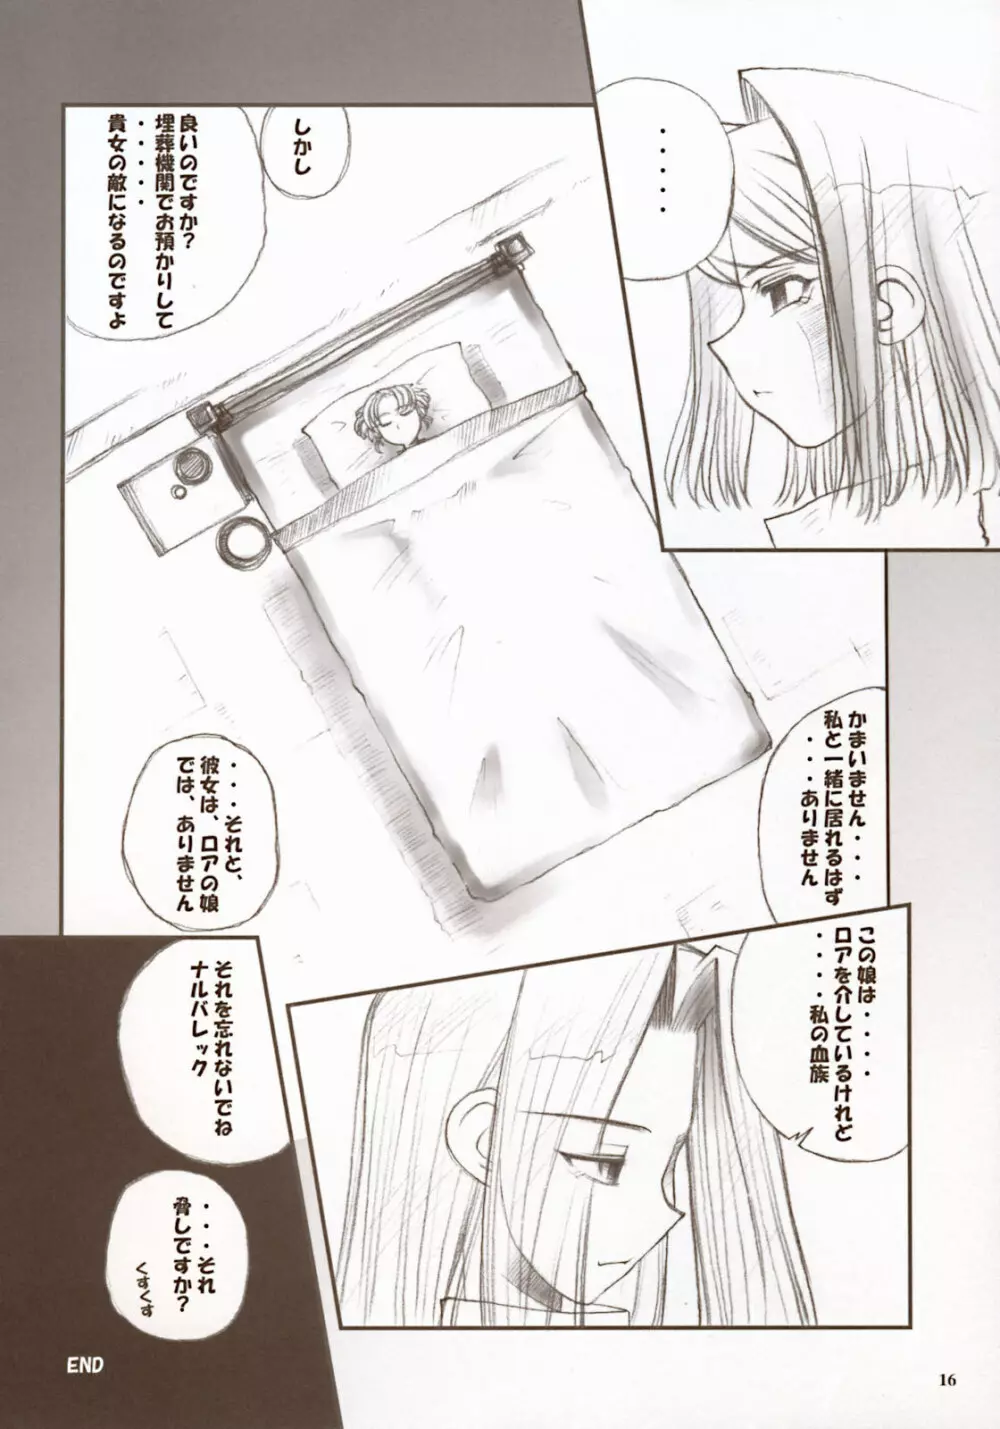 Moon Ecstasy ツキヒメゴト闇 LEVEL ☆☆ DARKNESS 16ページ